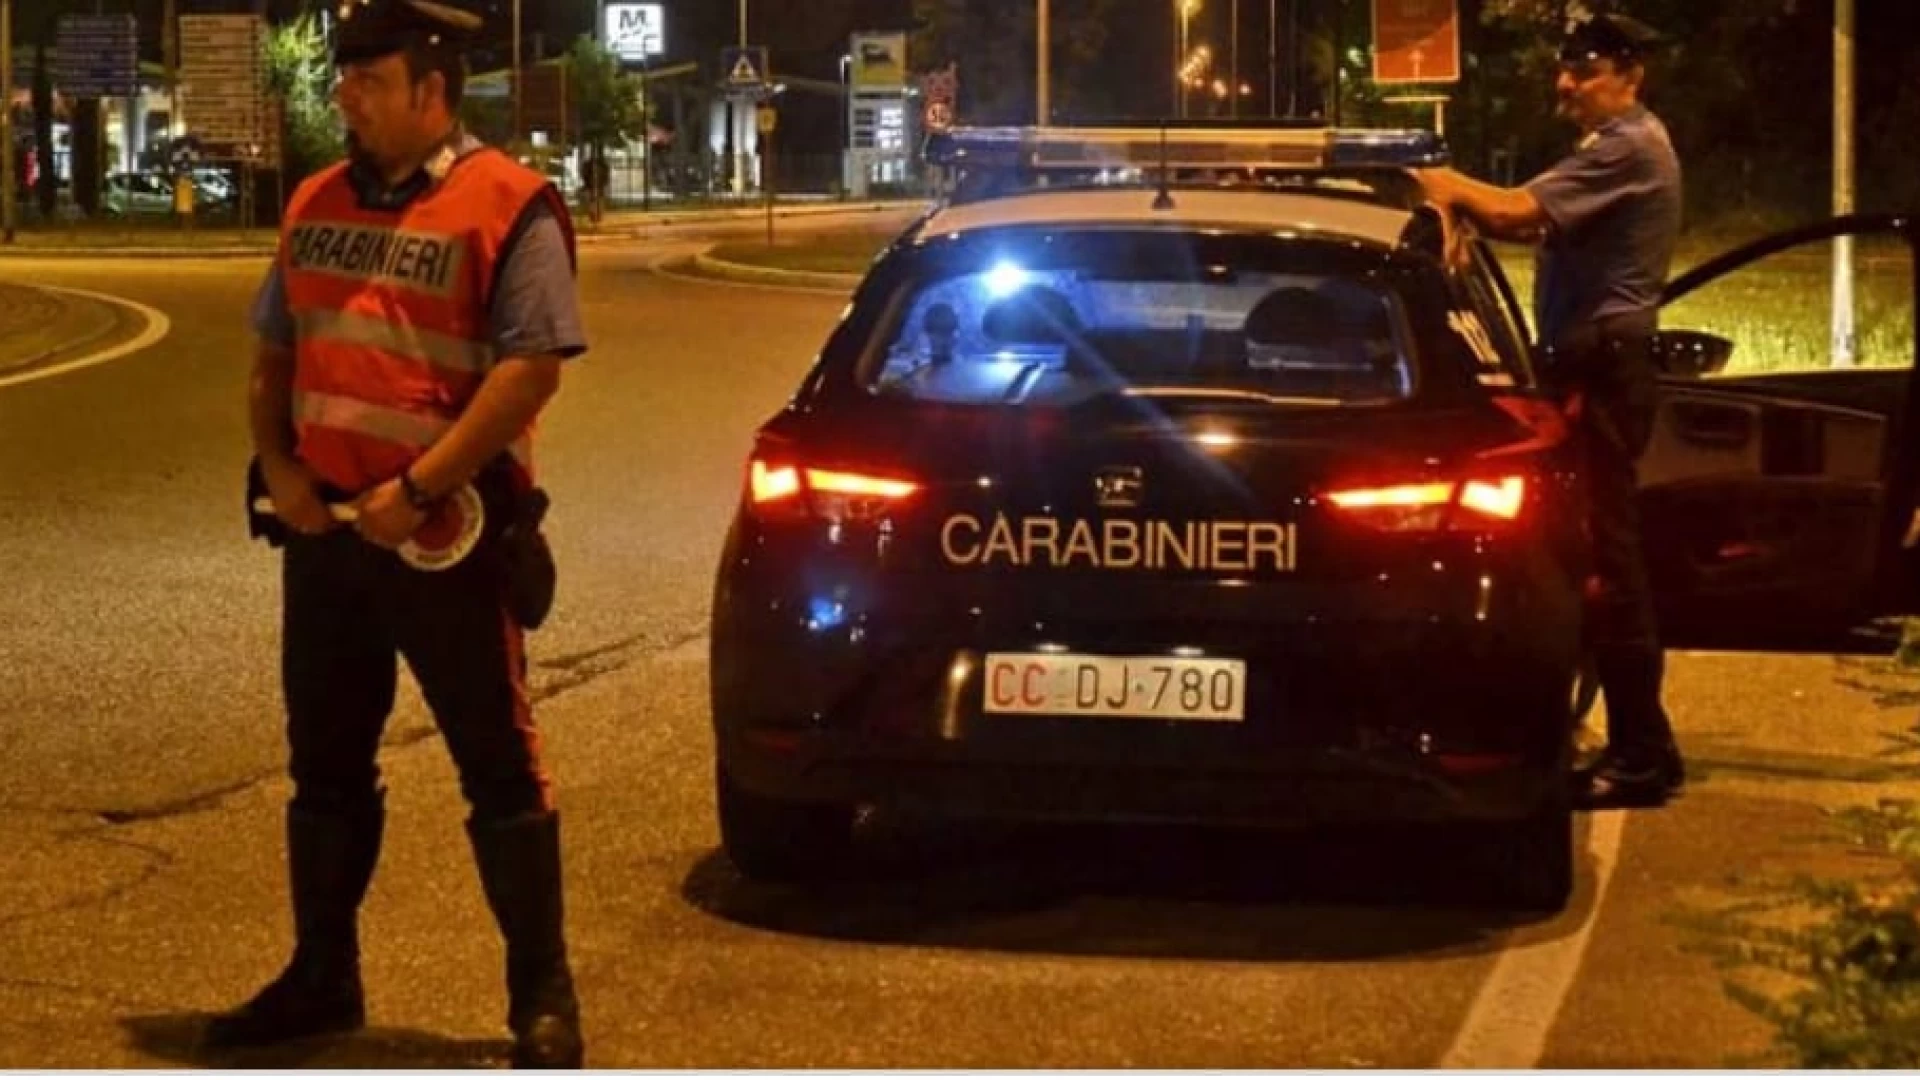 Isernia: I Carabinieri trovano un uomo in possesso di sostanza stupefacente.